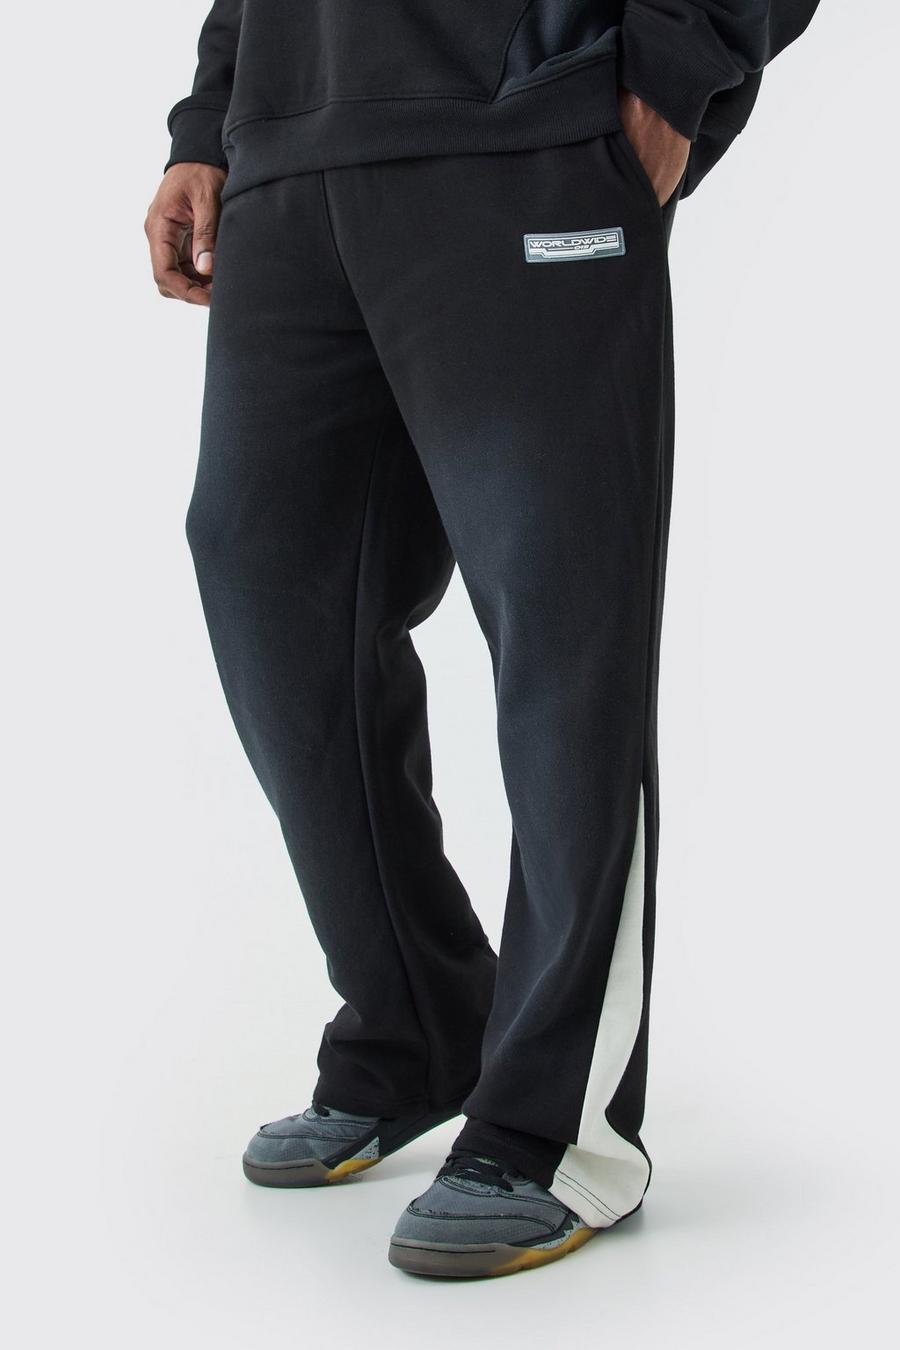 Pantaloni tuta Plus Size Regular Fit slavati con inserti e rovescio a ricci, Black